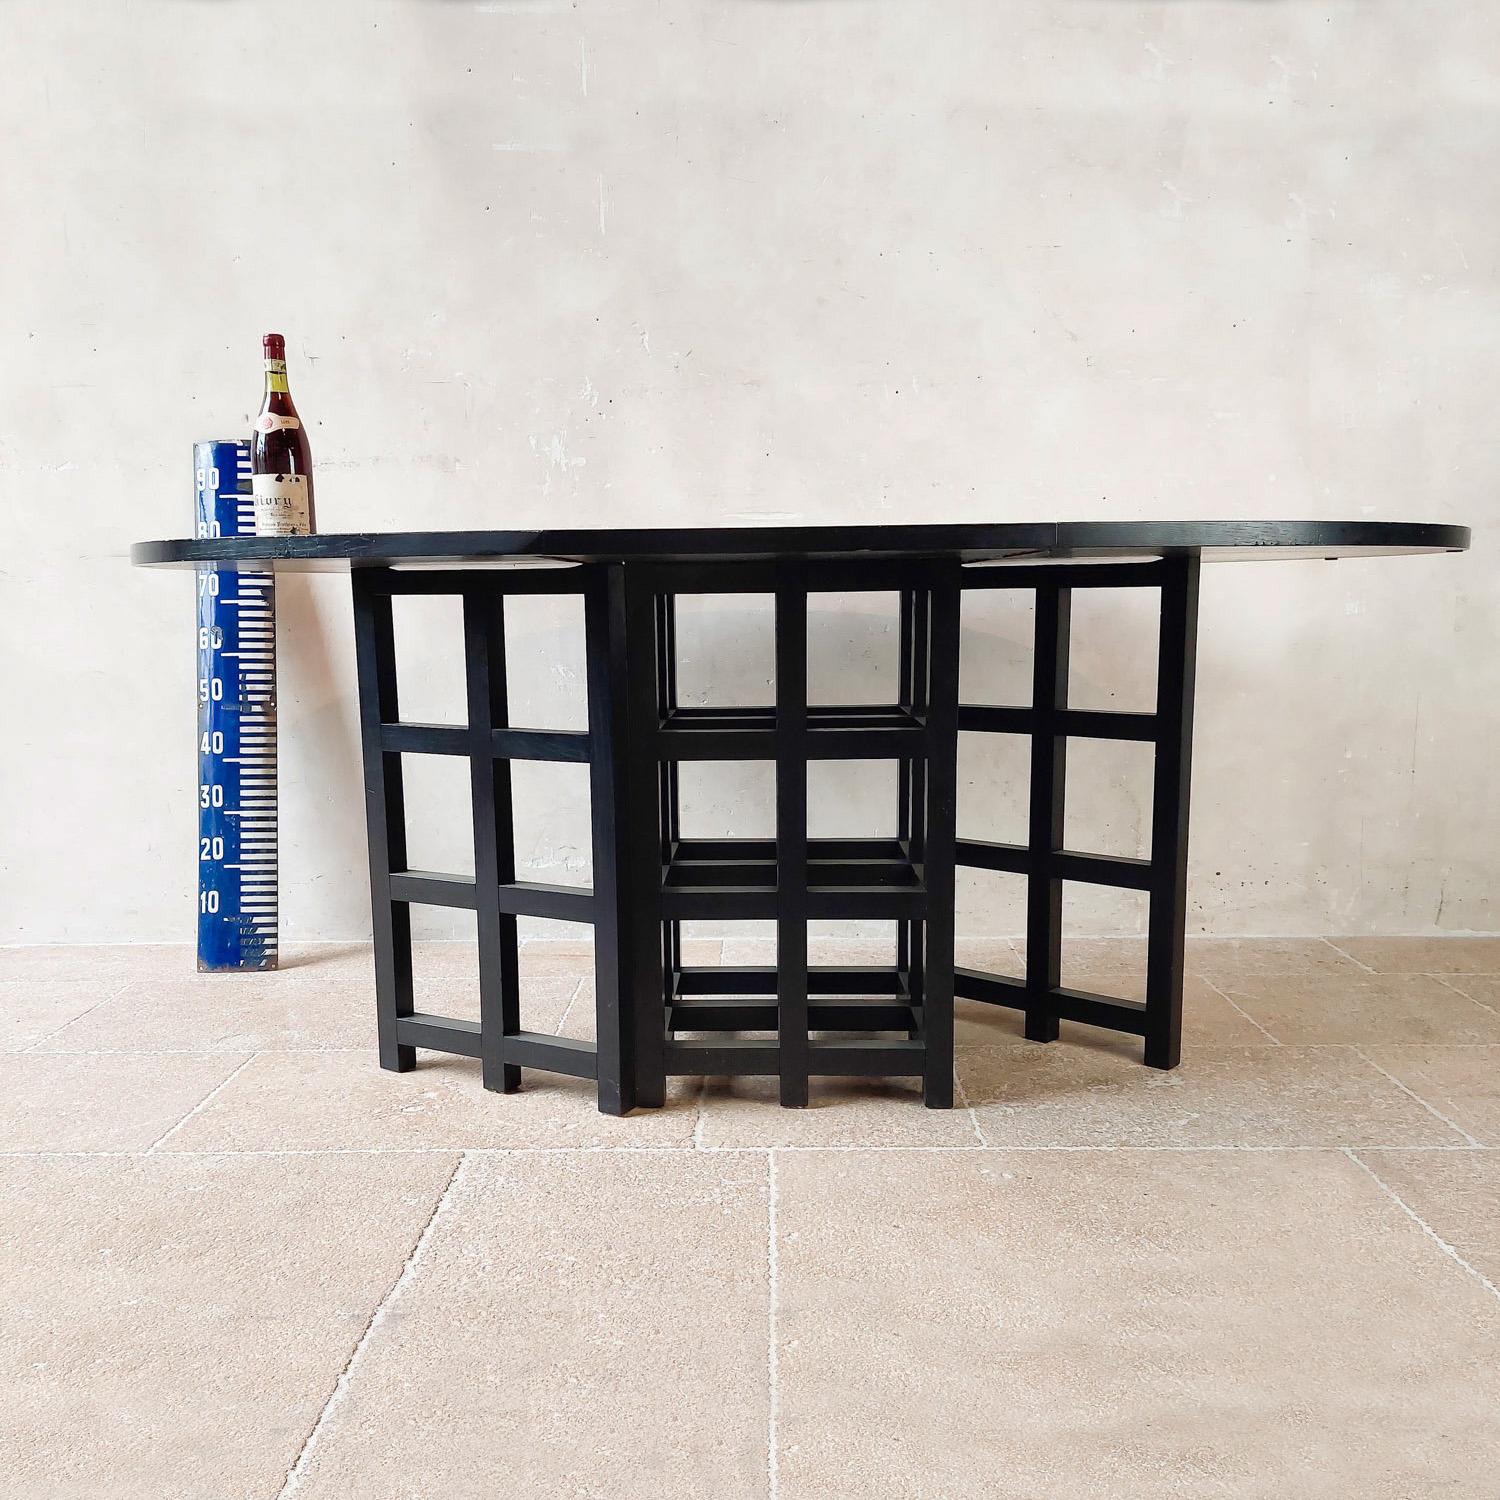 Elegant ensemble de salle à manger, conçu par Charles Rennie Mackintosh et fabriqué de manière experte en Italie dans les années 1970. Cet ensemble comprend une table de salle à manger ovale sophistiquée et quatre chaises assorties.

La table ovale